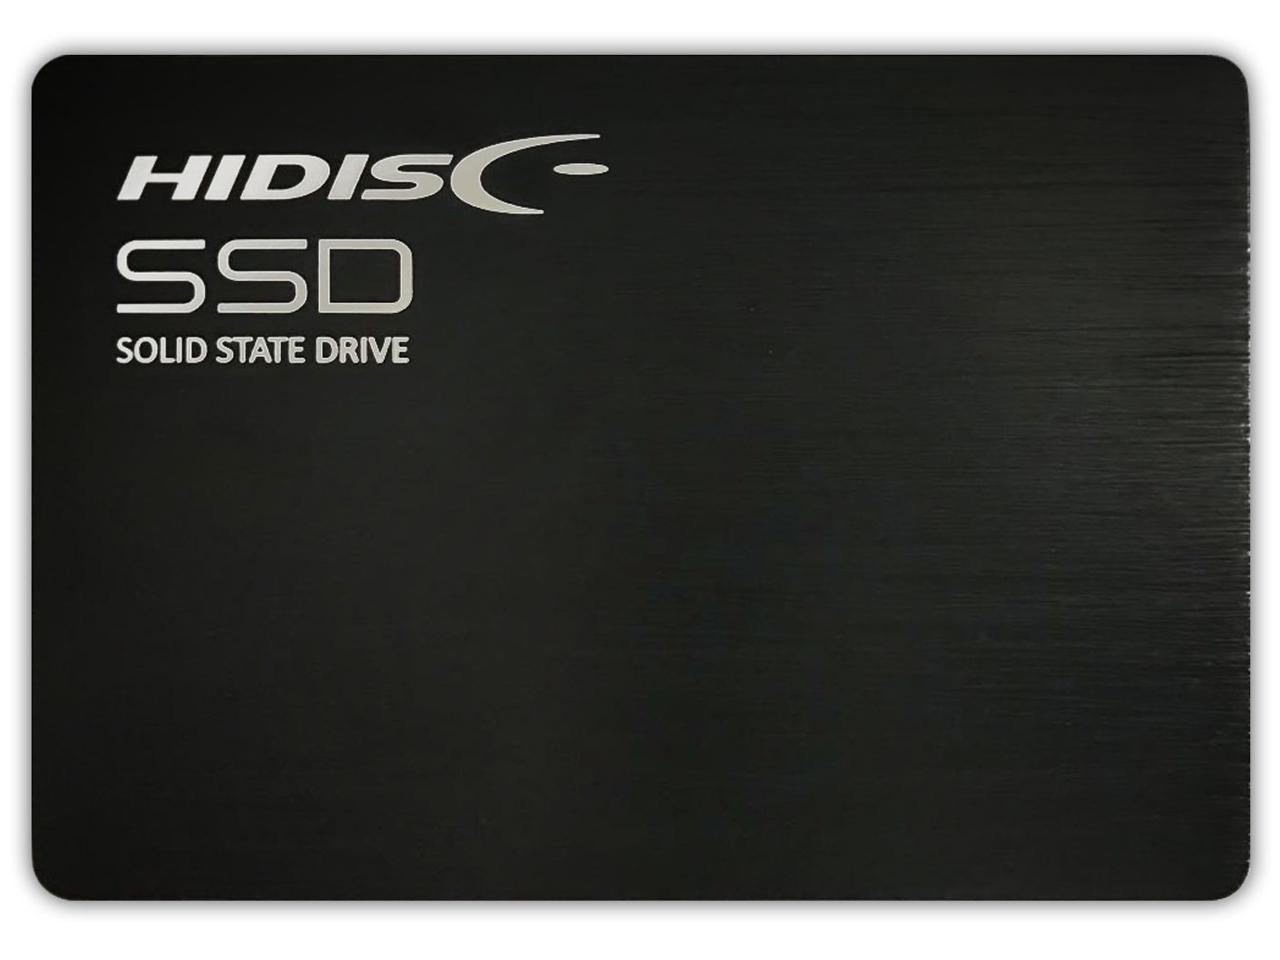 2.5C`SATAڑ SSD 1TB ubN(HDSSD1TJP3)